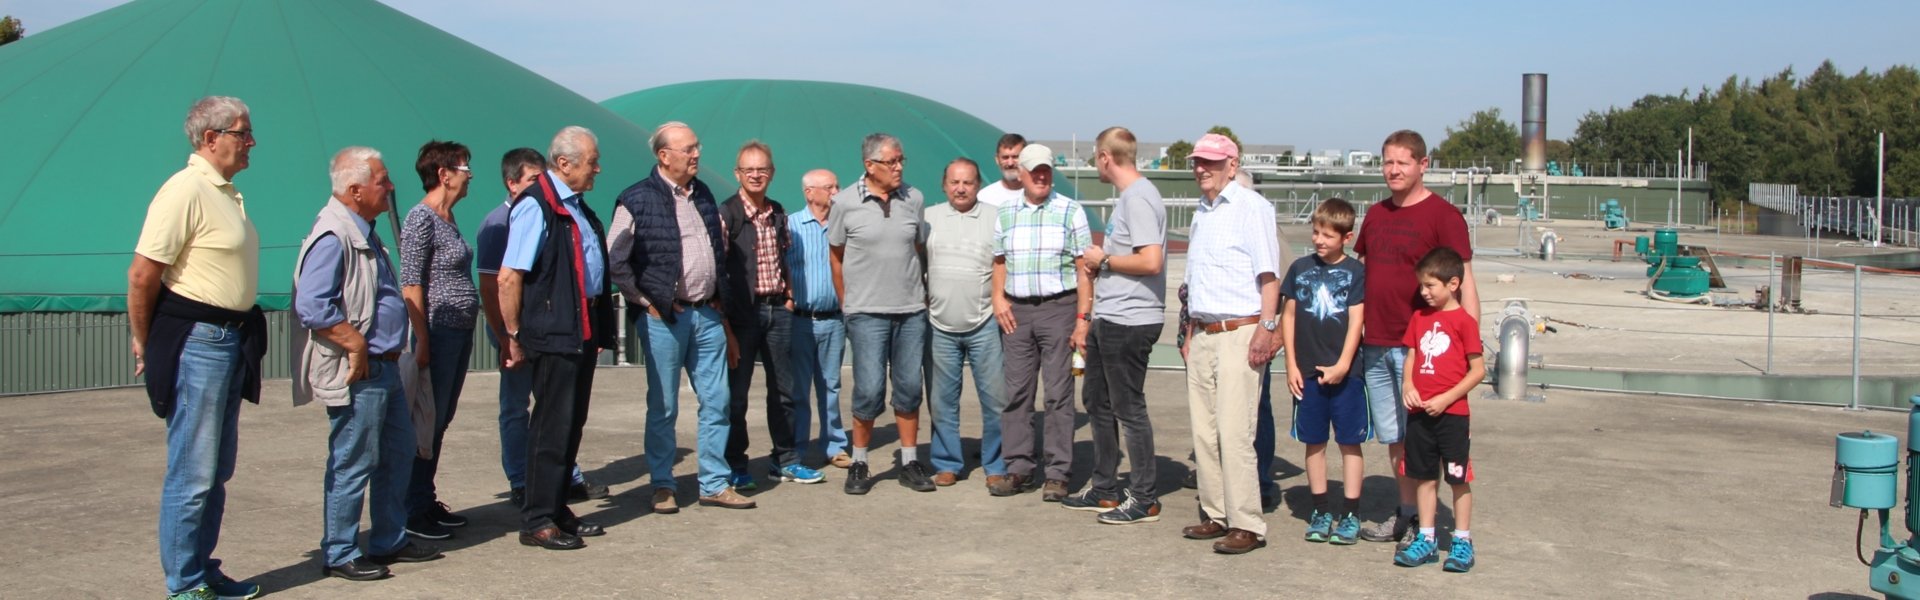 Begehung Biogasanlage Laupheim: Gruppenbild der SZ-Leser besuchen Betriebsgelände